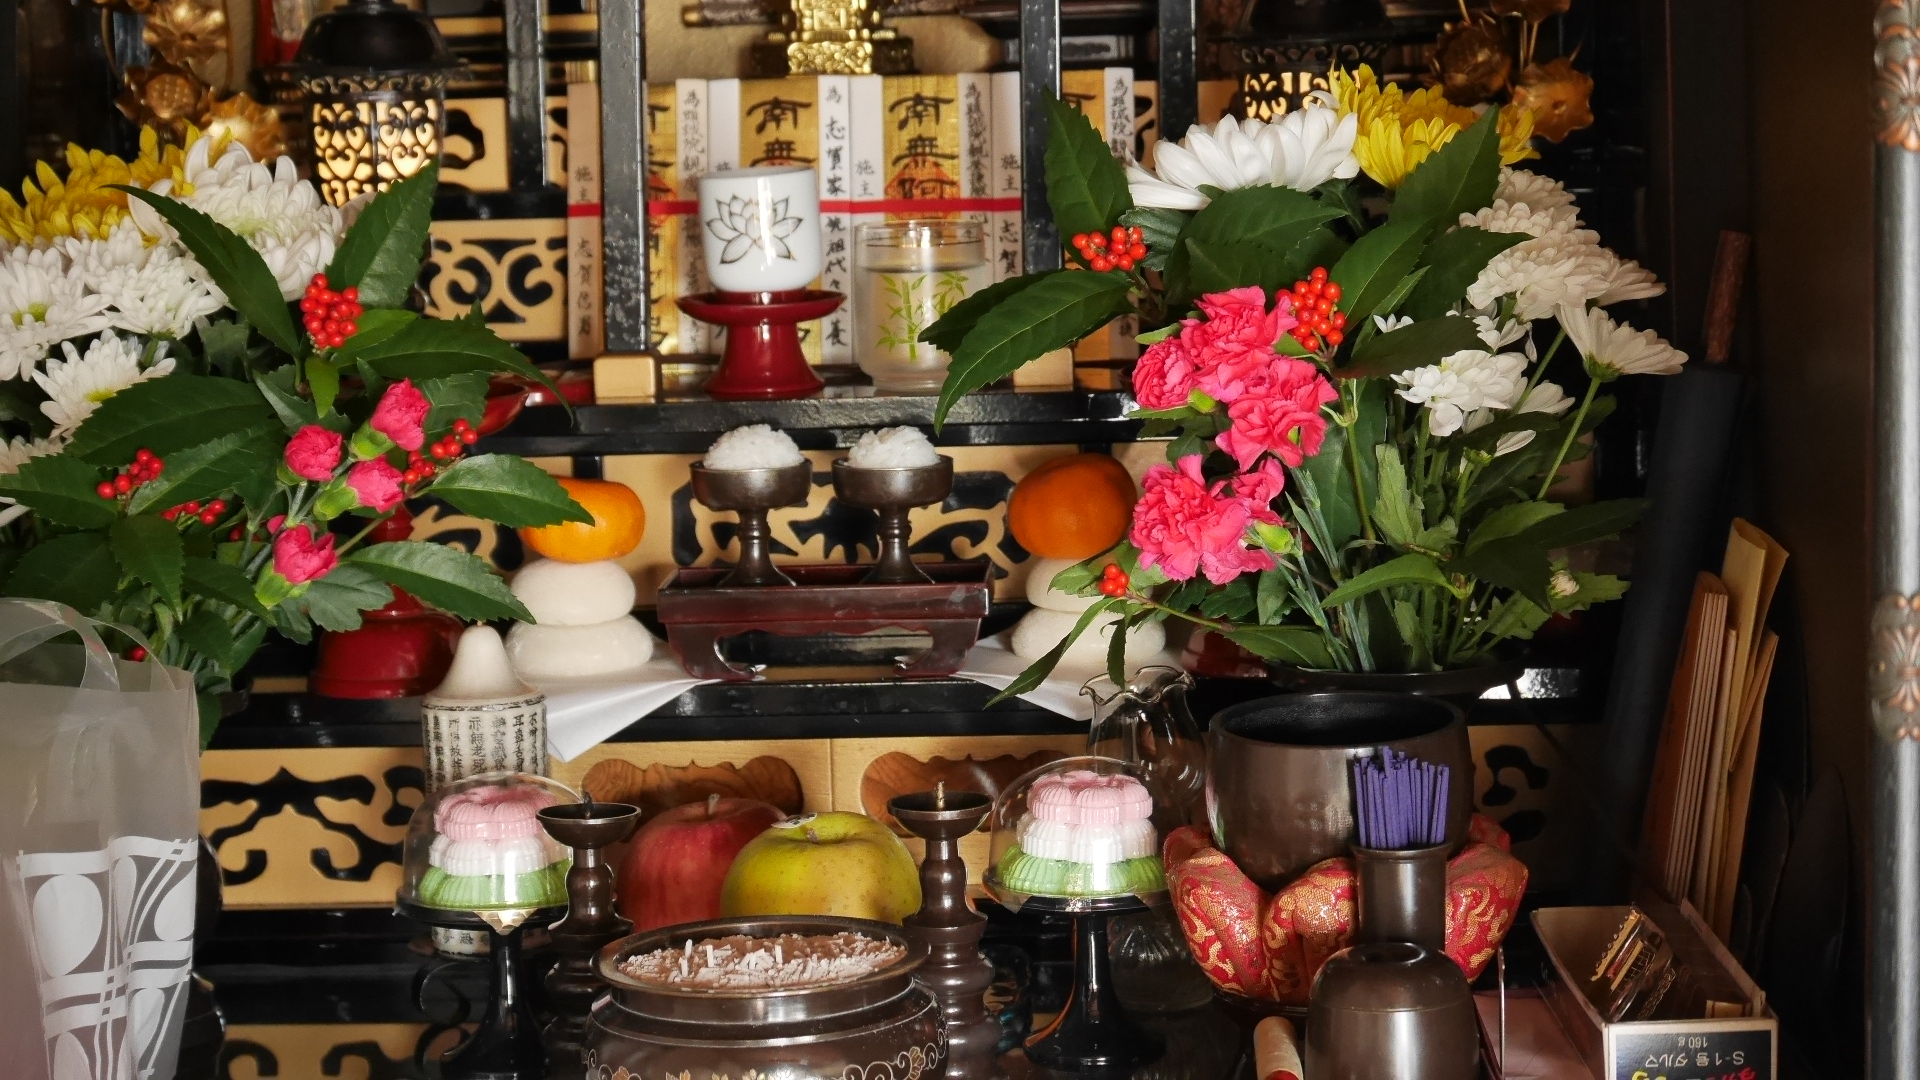 お正月 仏壇のお供え物の のし は何 お金を包む際の相場もチェック 知恵ペディア